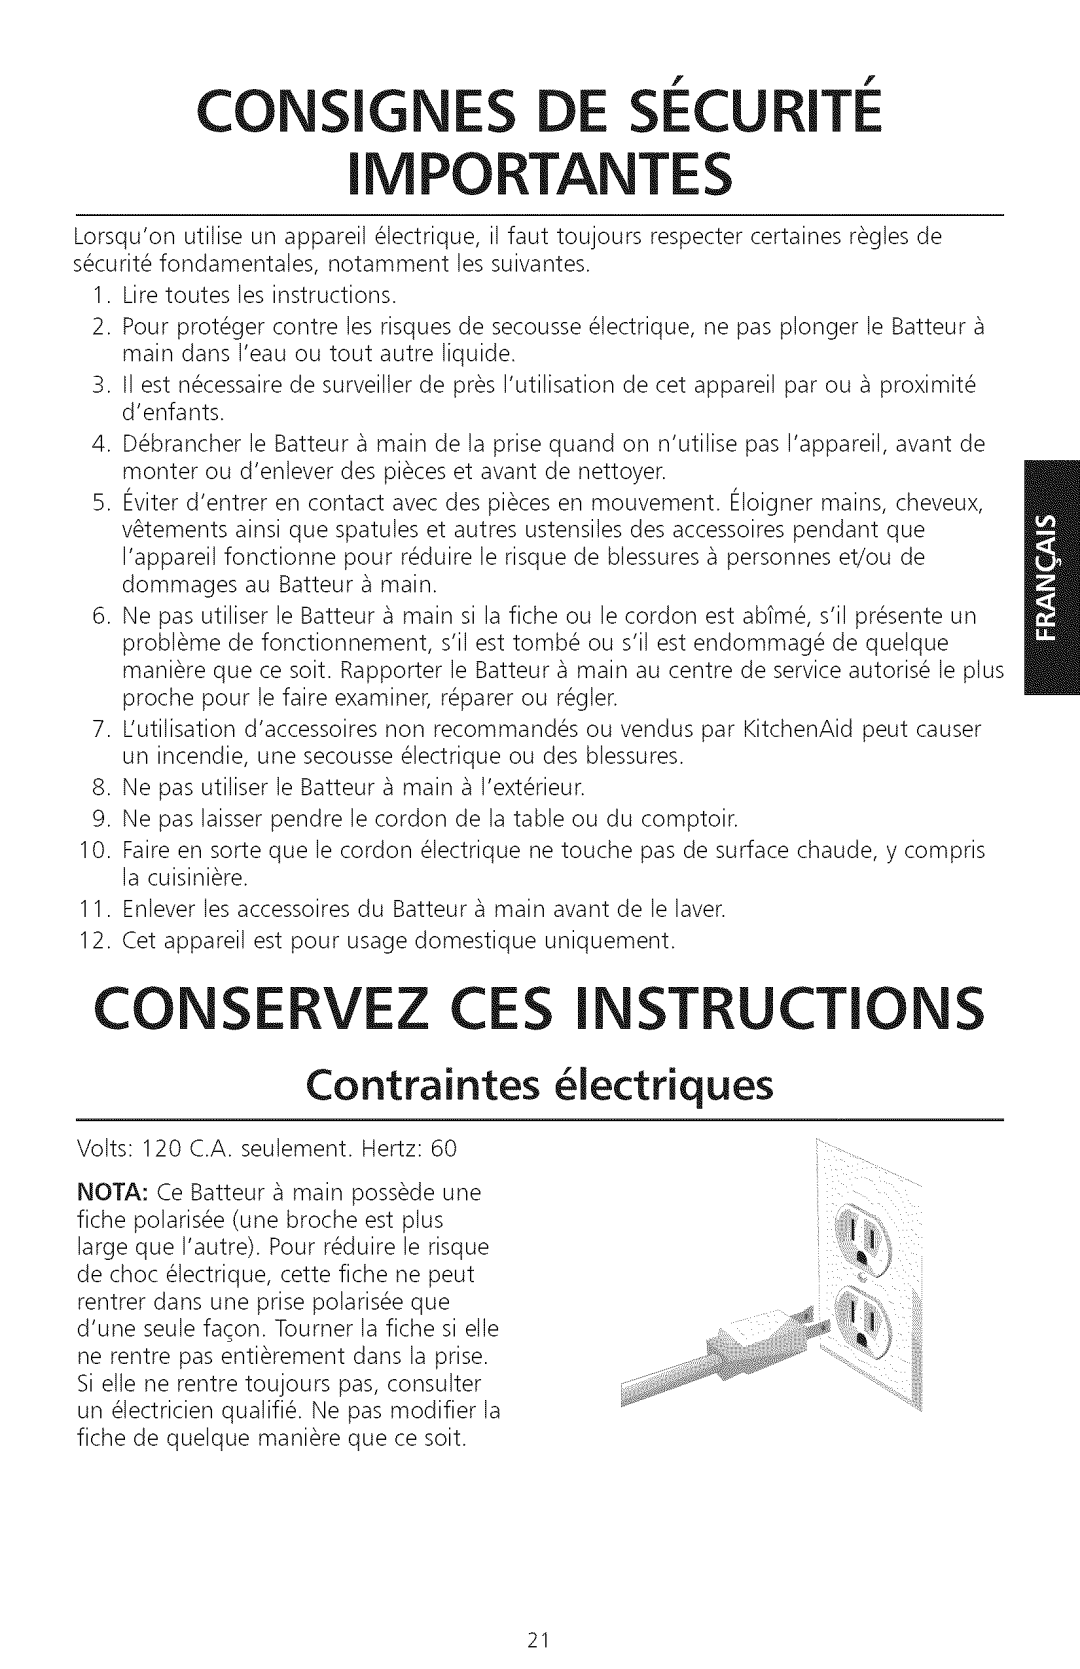 KitchenAid KHM720, KHM920 manual Consignes De Securite, Importantes, Conservez Ces Instructions, Contraintes iectriques 